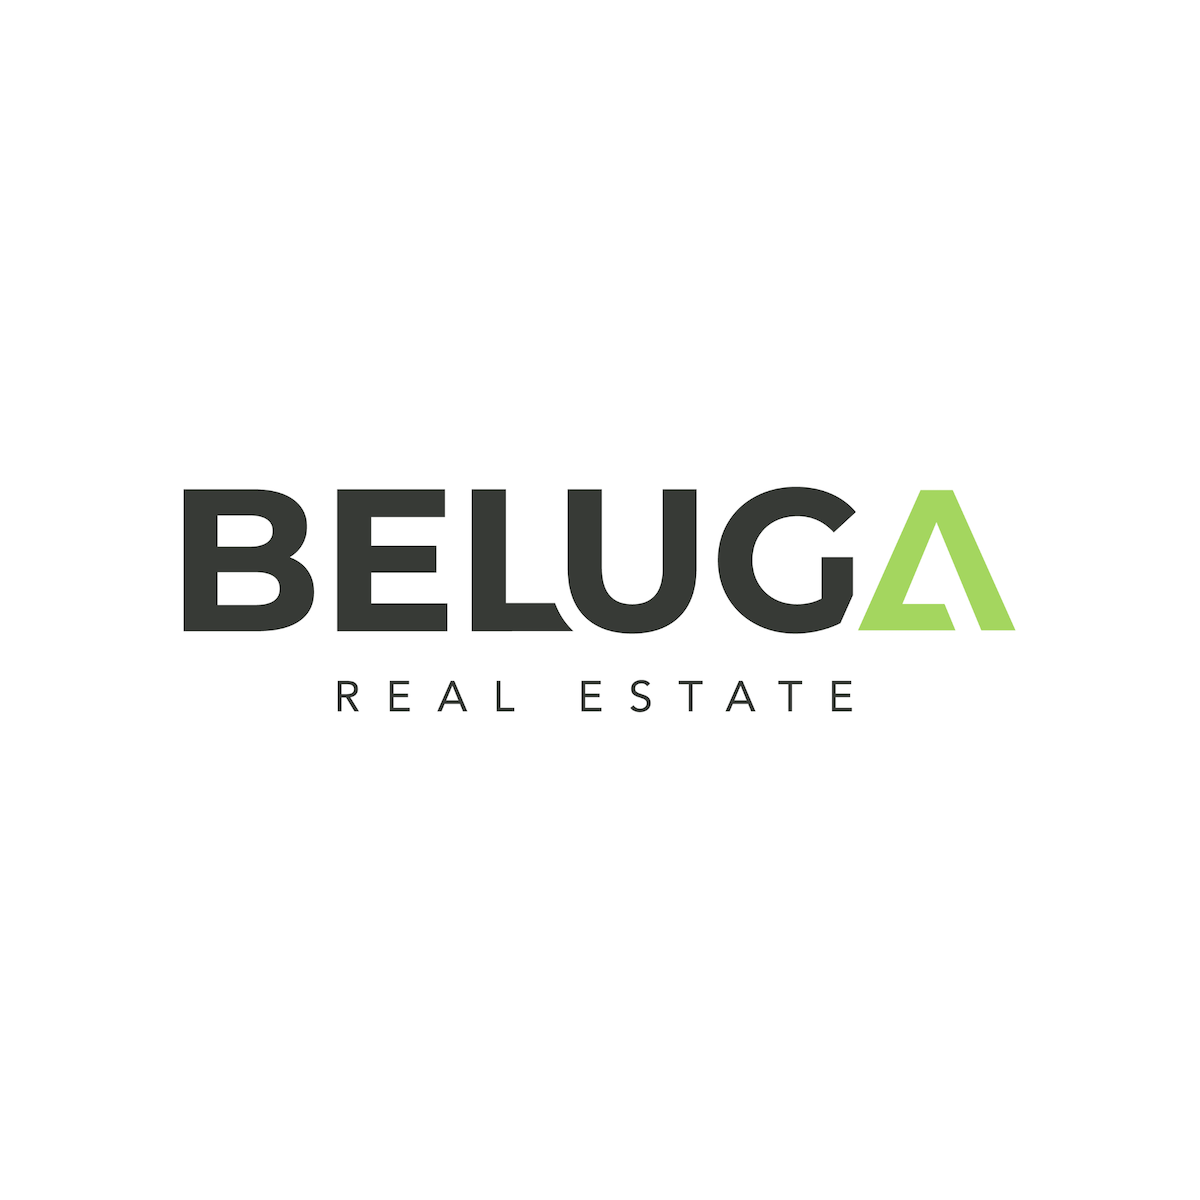 Beluga Real Estate